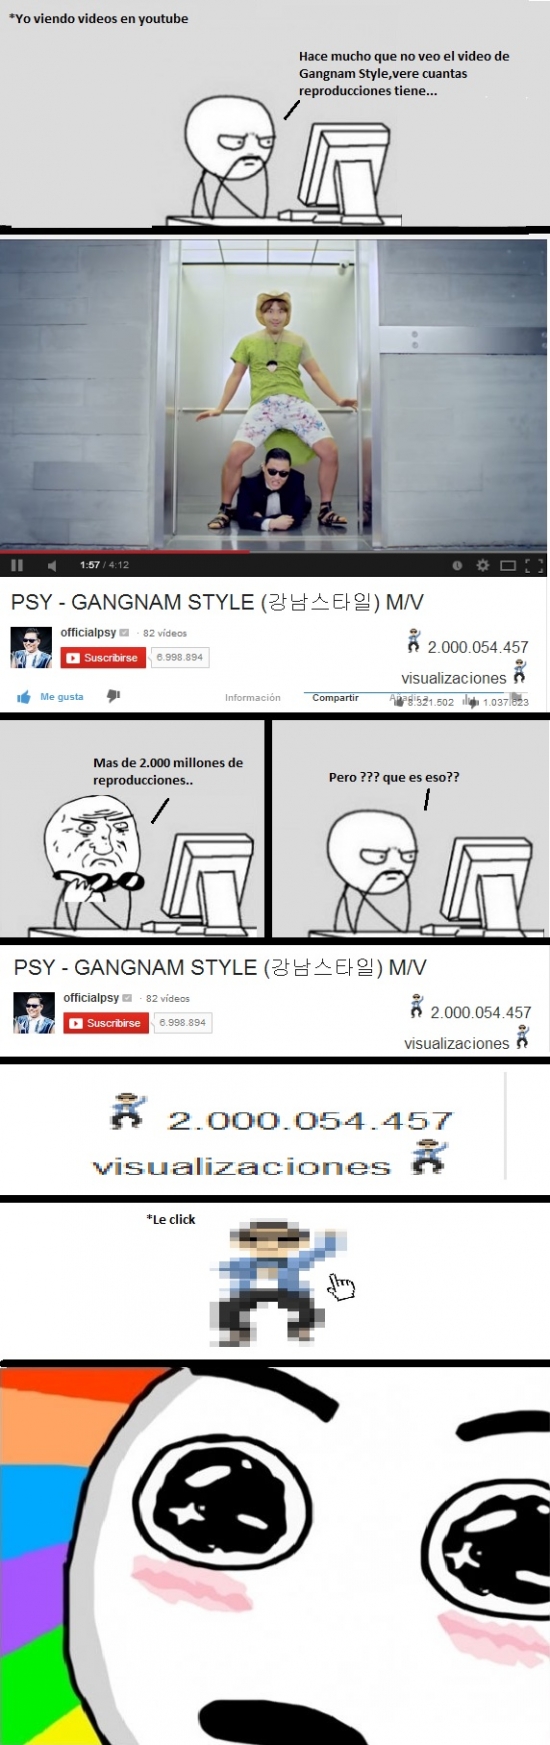 Amazed - Gangnam Style alcanza 2.000 millones de visualizaciones y Youtube lo celebra así